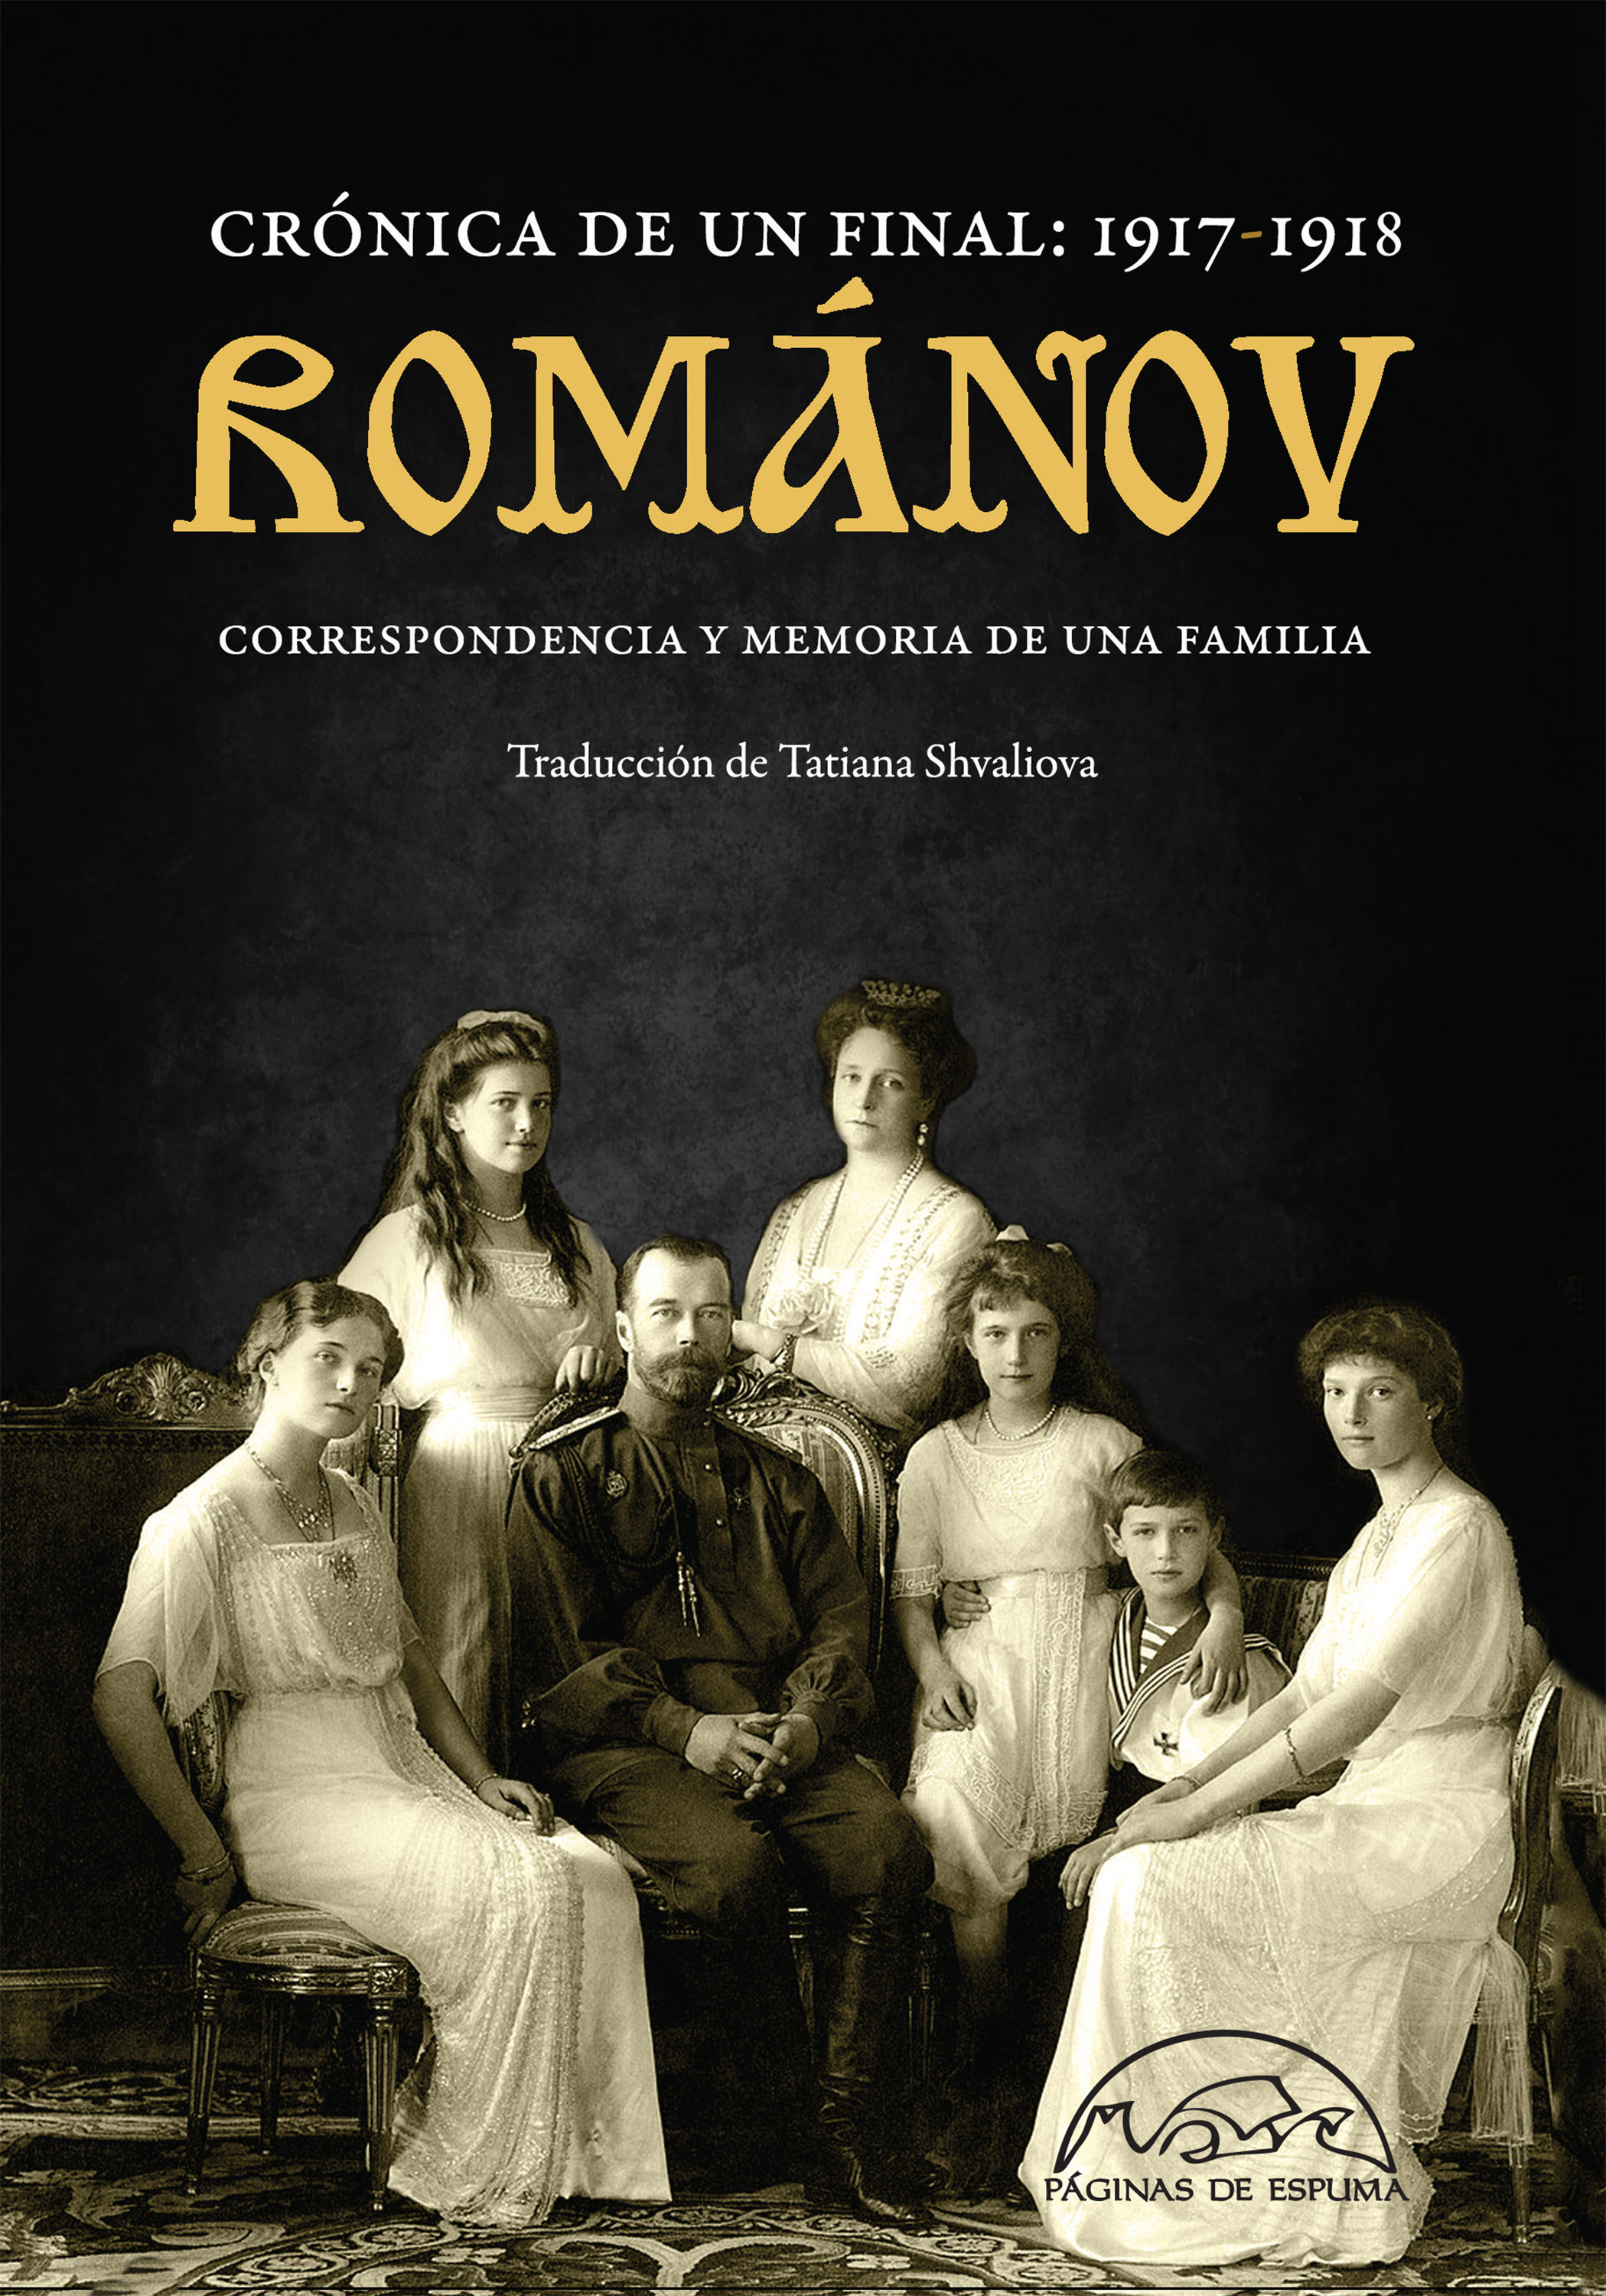 Románov. Crónica de un final: 1917-1918